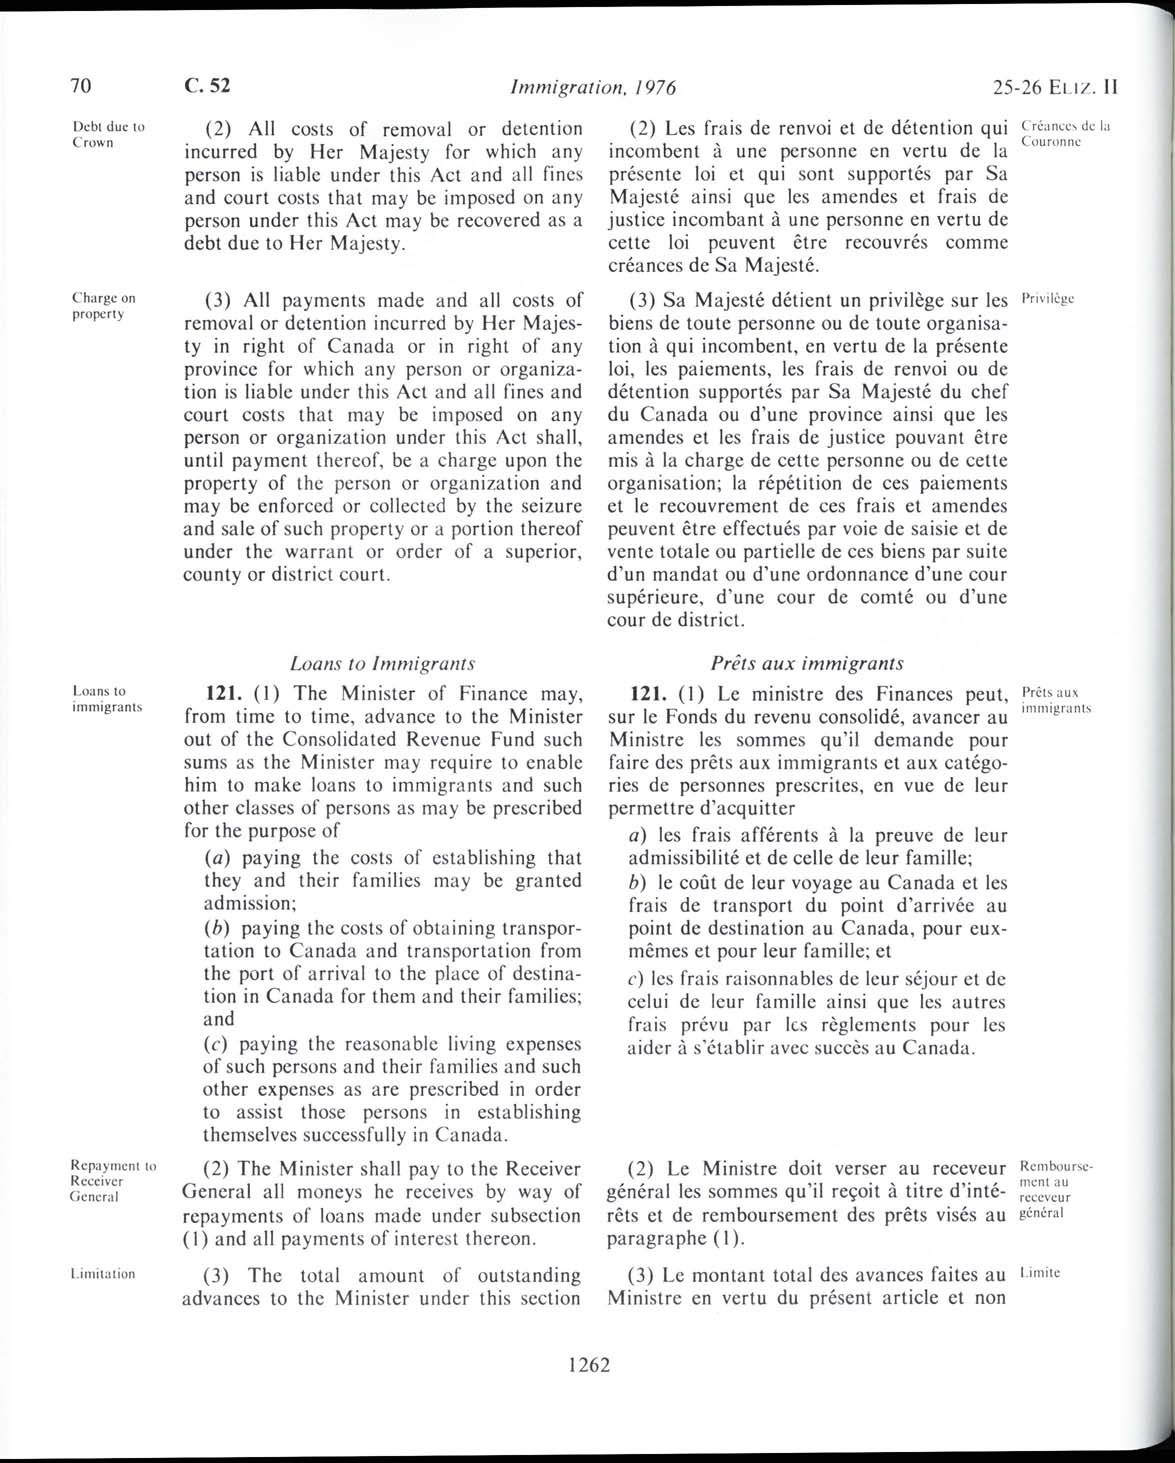 Page 1262 Loi sur l’immigration de 1976